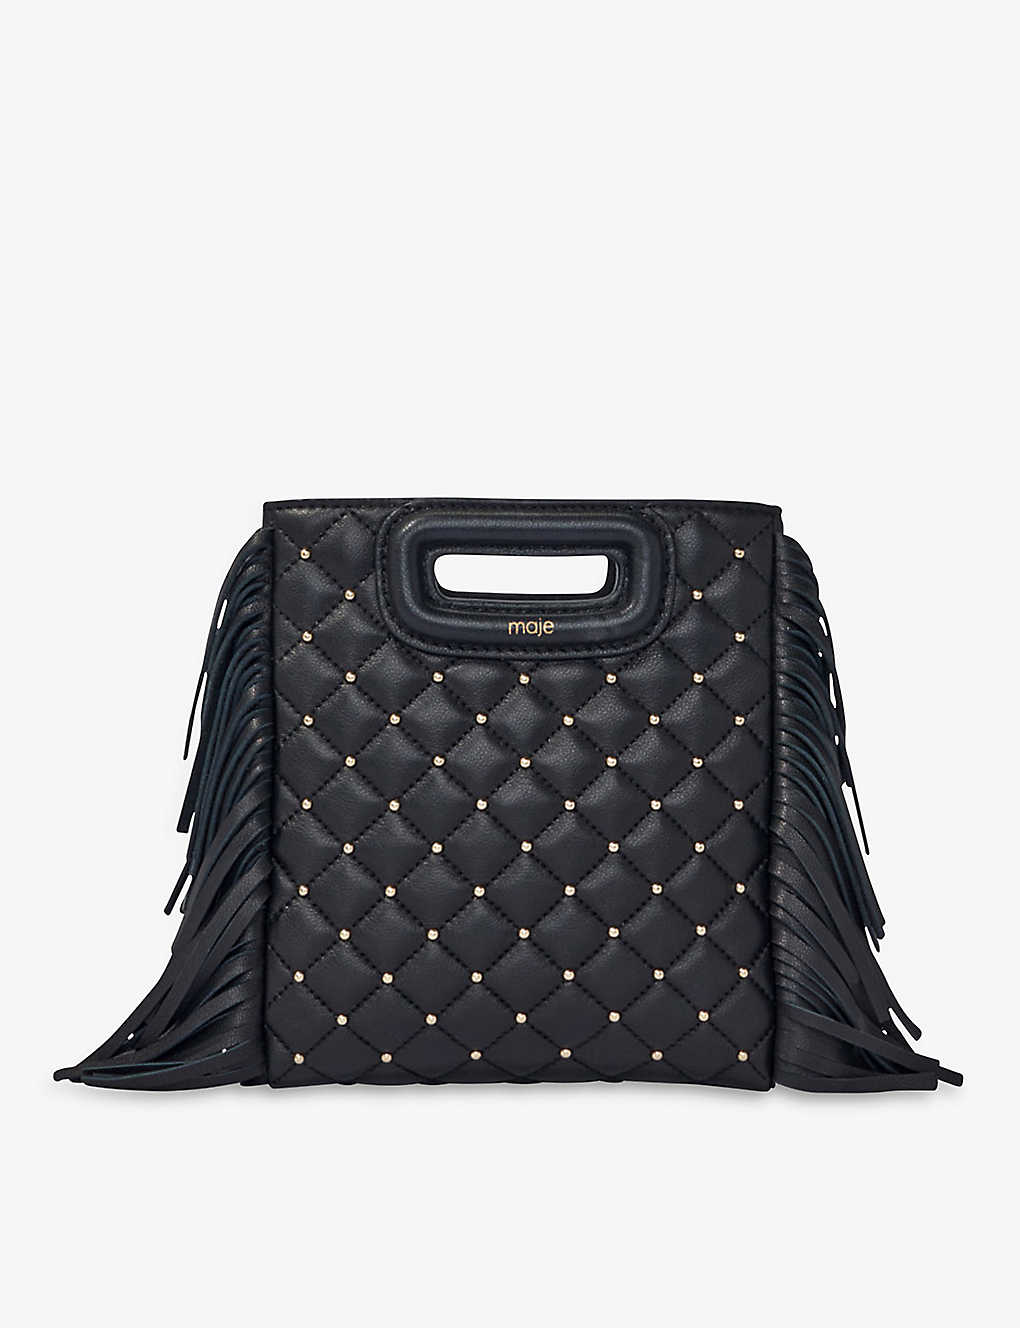 Maje Black Quilted Stud-embellished Leather Bag In Noir / Gris